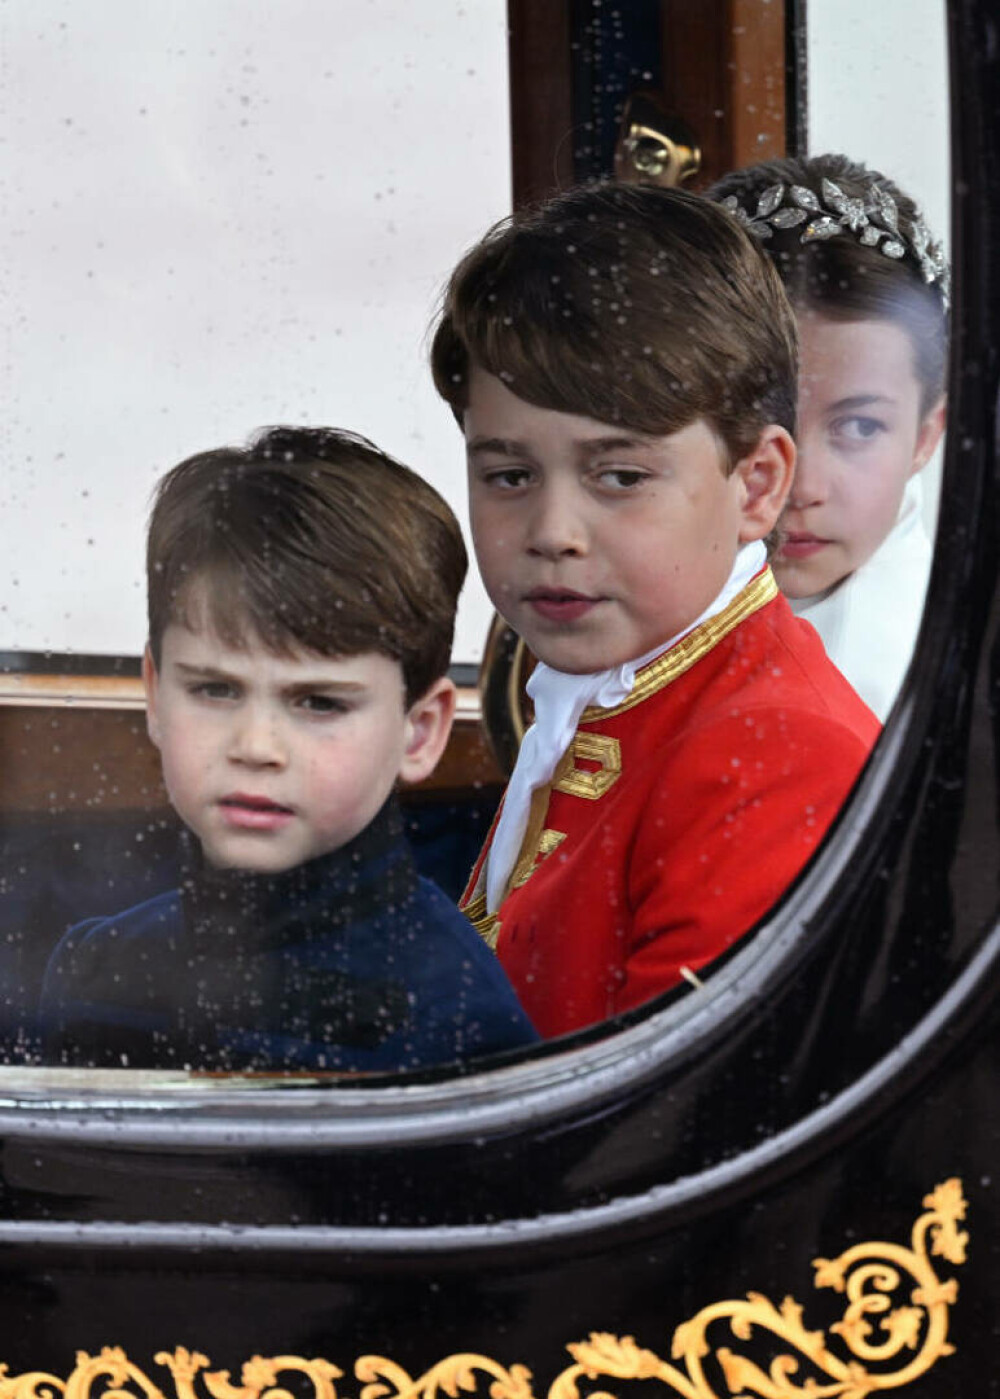 Detaliul ascuns din portretul regelui Charles și reginei Camilla aproape că a trecut neobservat. Ce reprezintă, de fapt - Imaginea 4